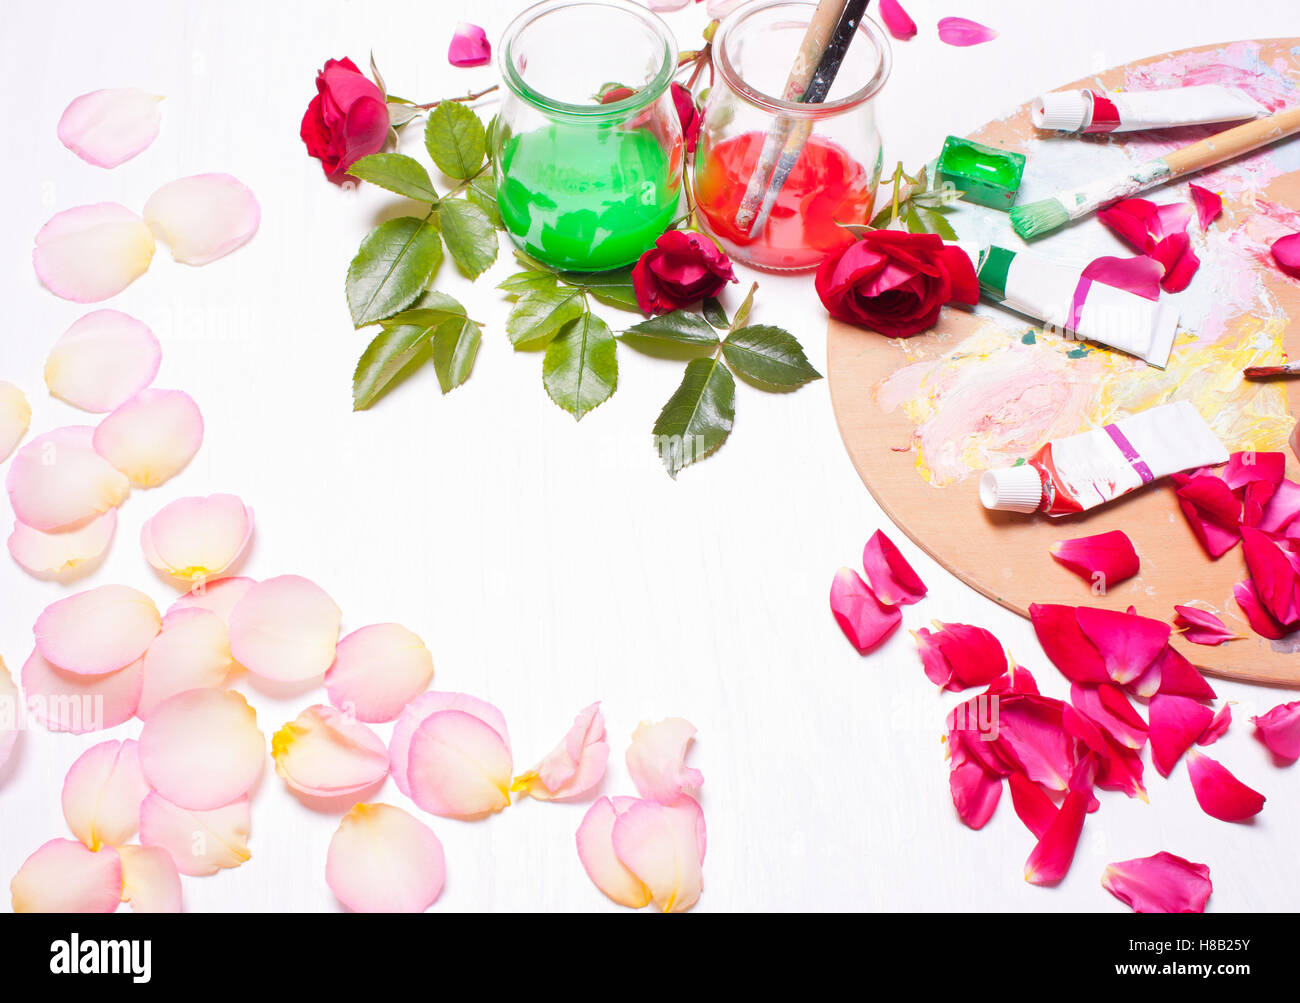 Farben und Pinsel mit Rosenblättern. Arbeitsplatz des Künstlers, Designers. Konzeptkunst, kreativ. Draufsicht Hintergrund. Stockfoto